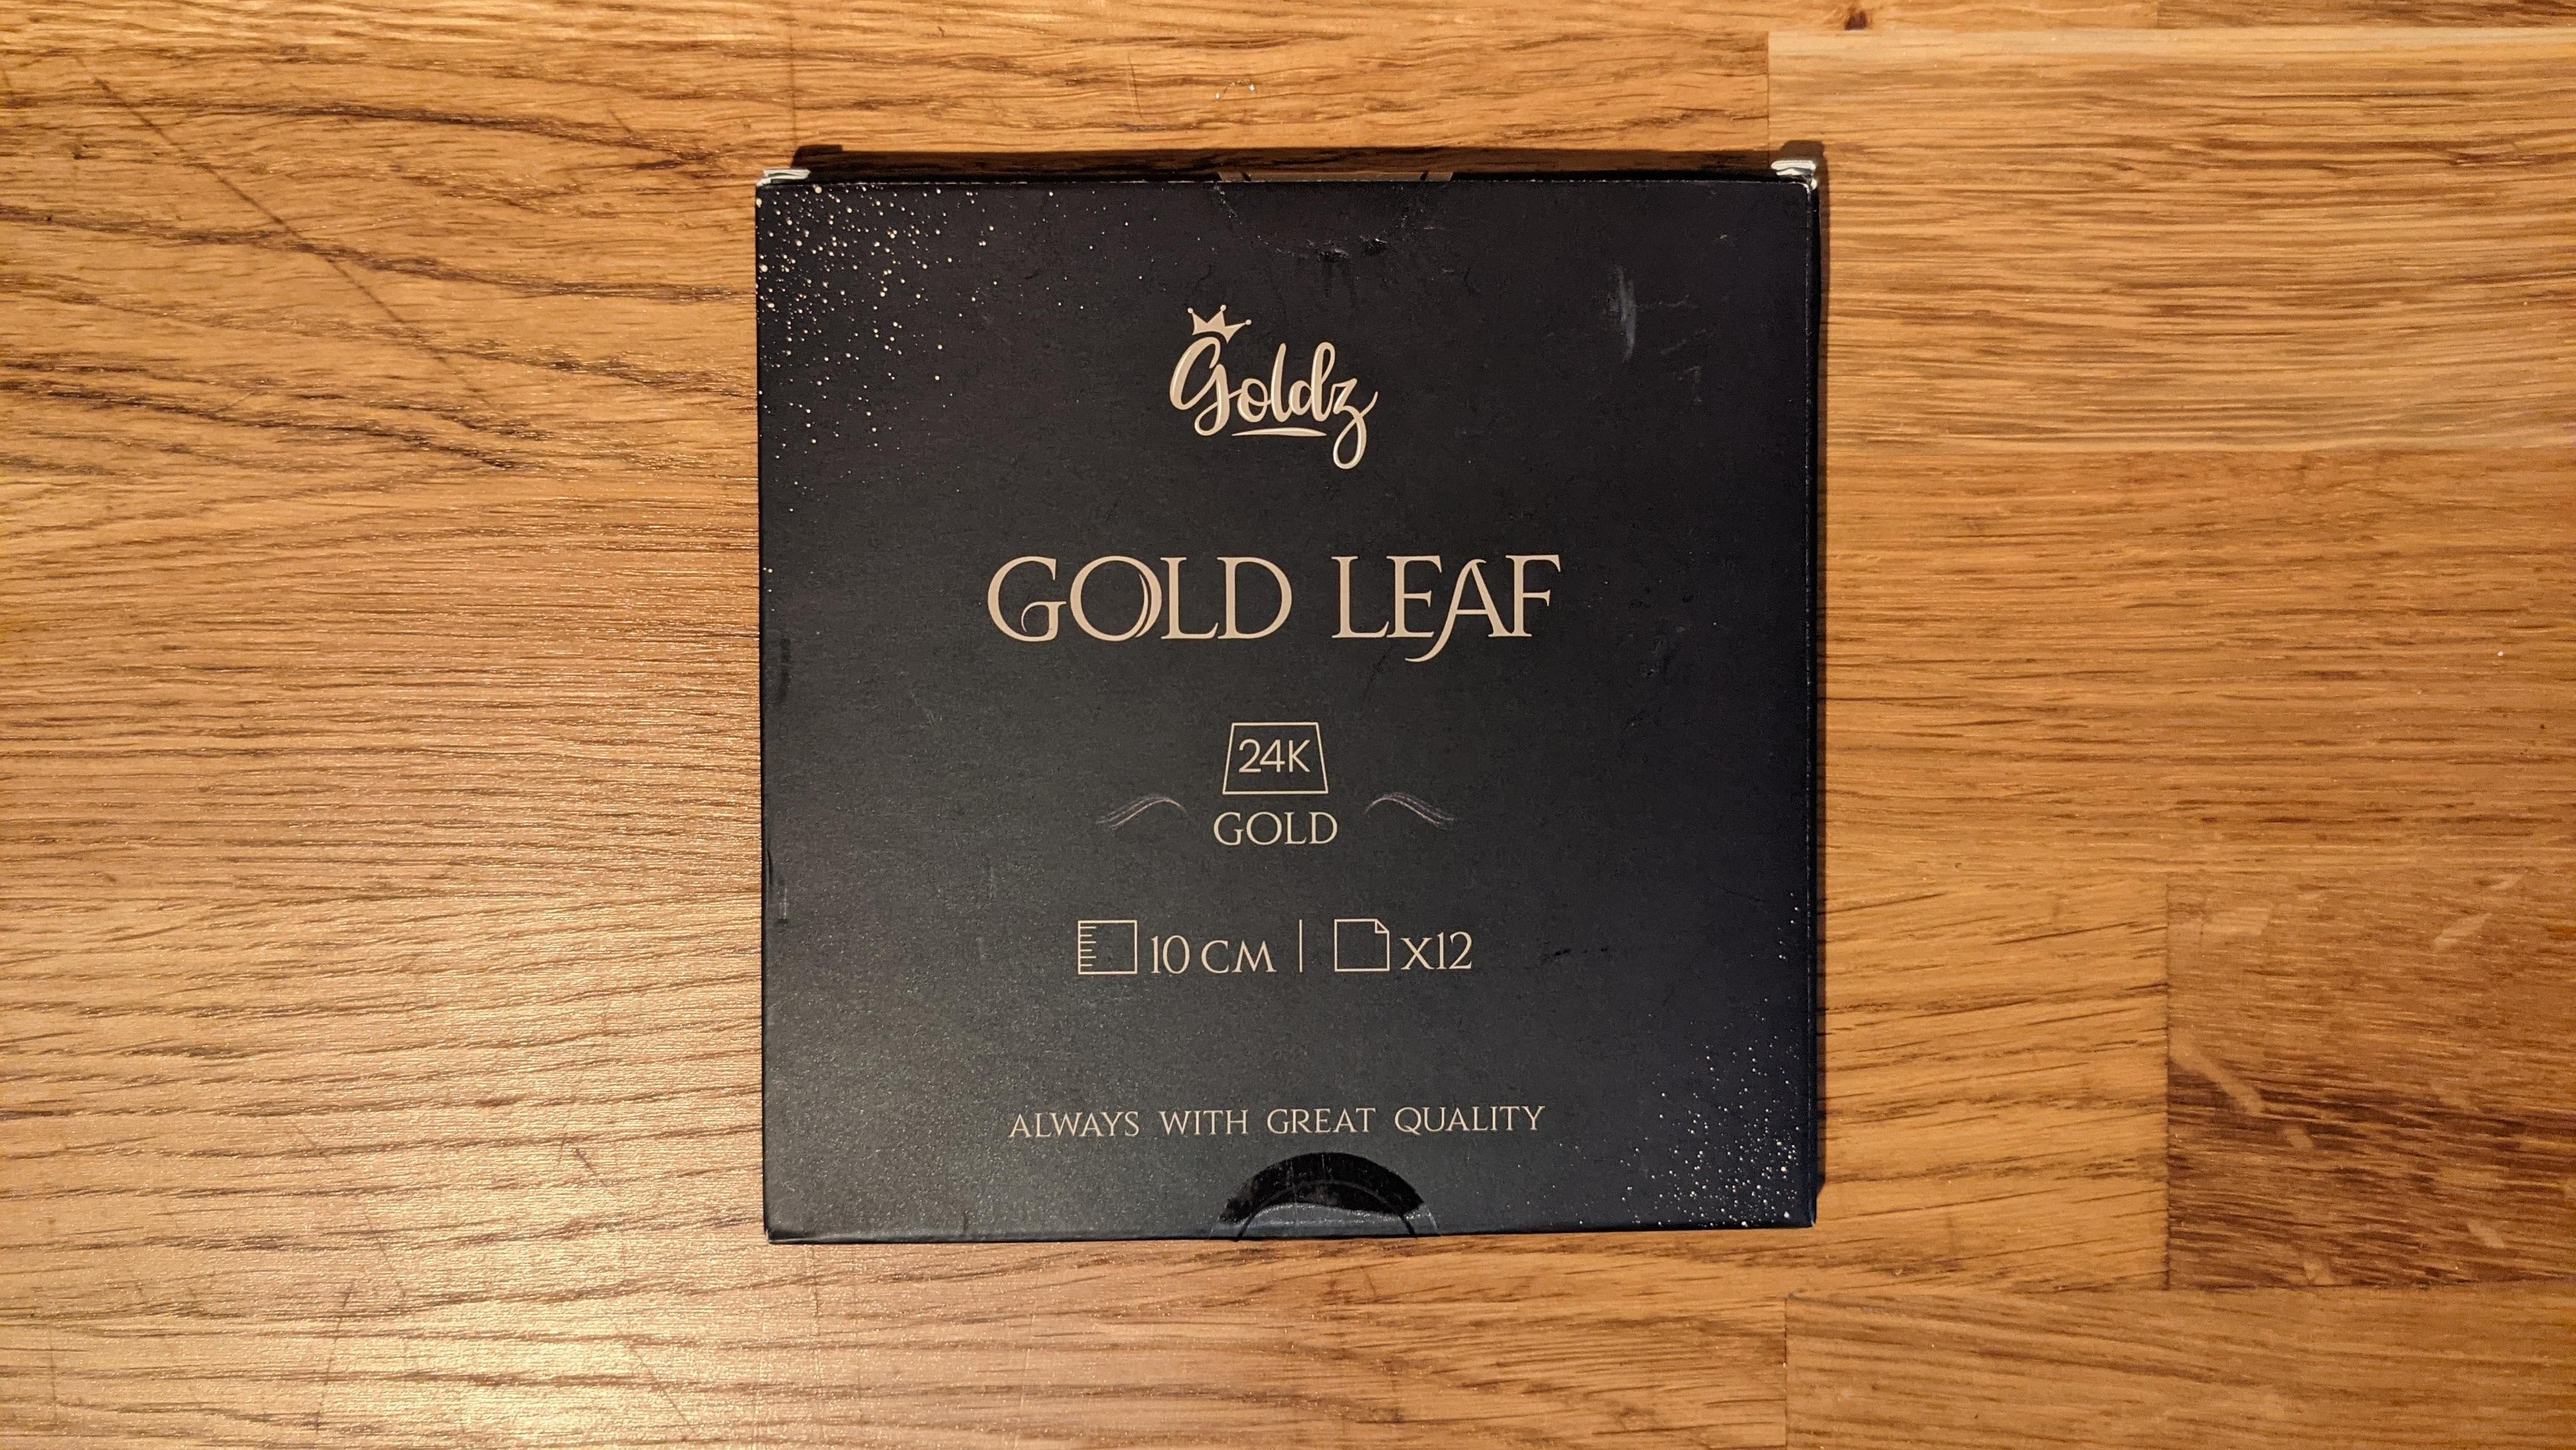 gold leaf packaging